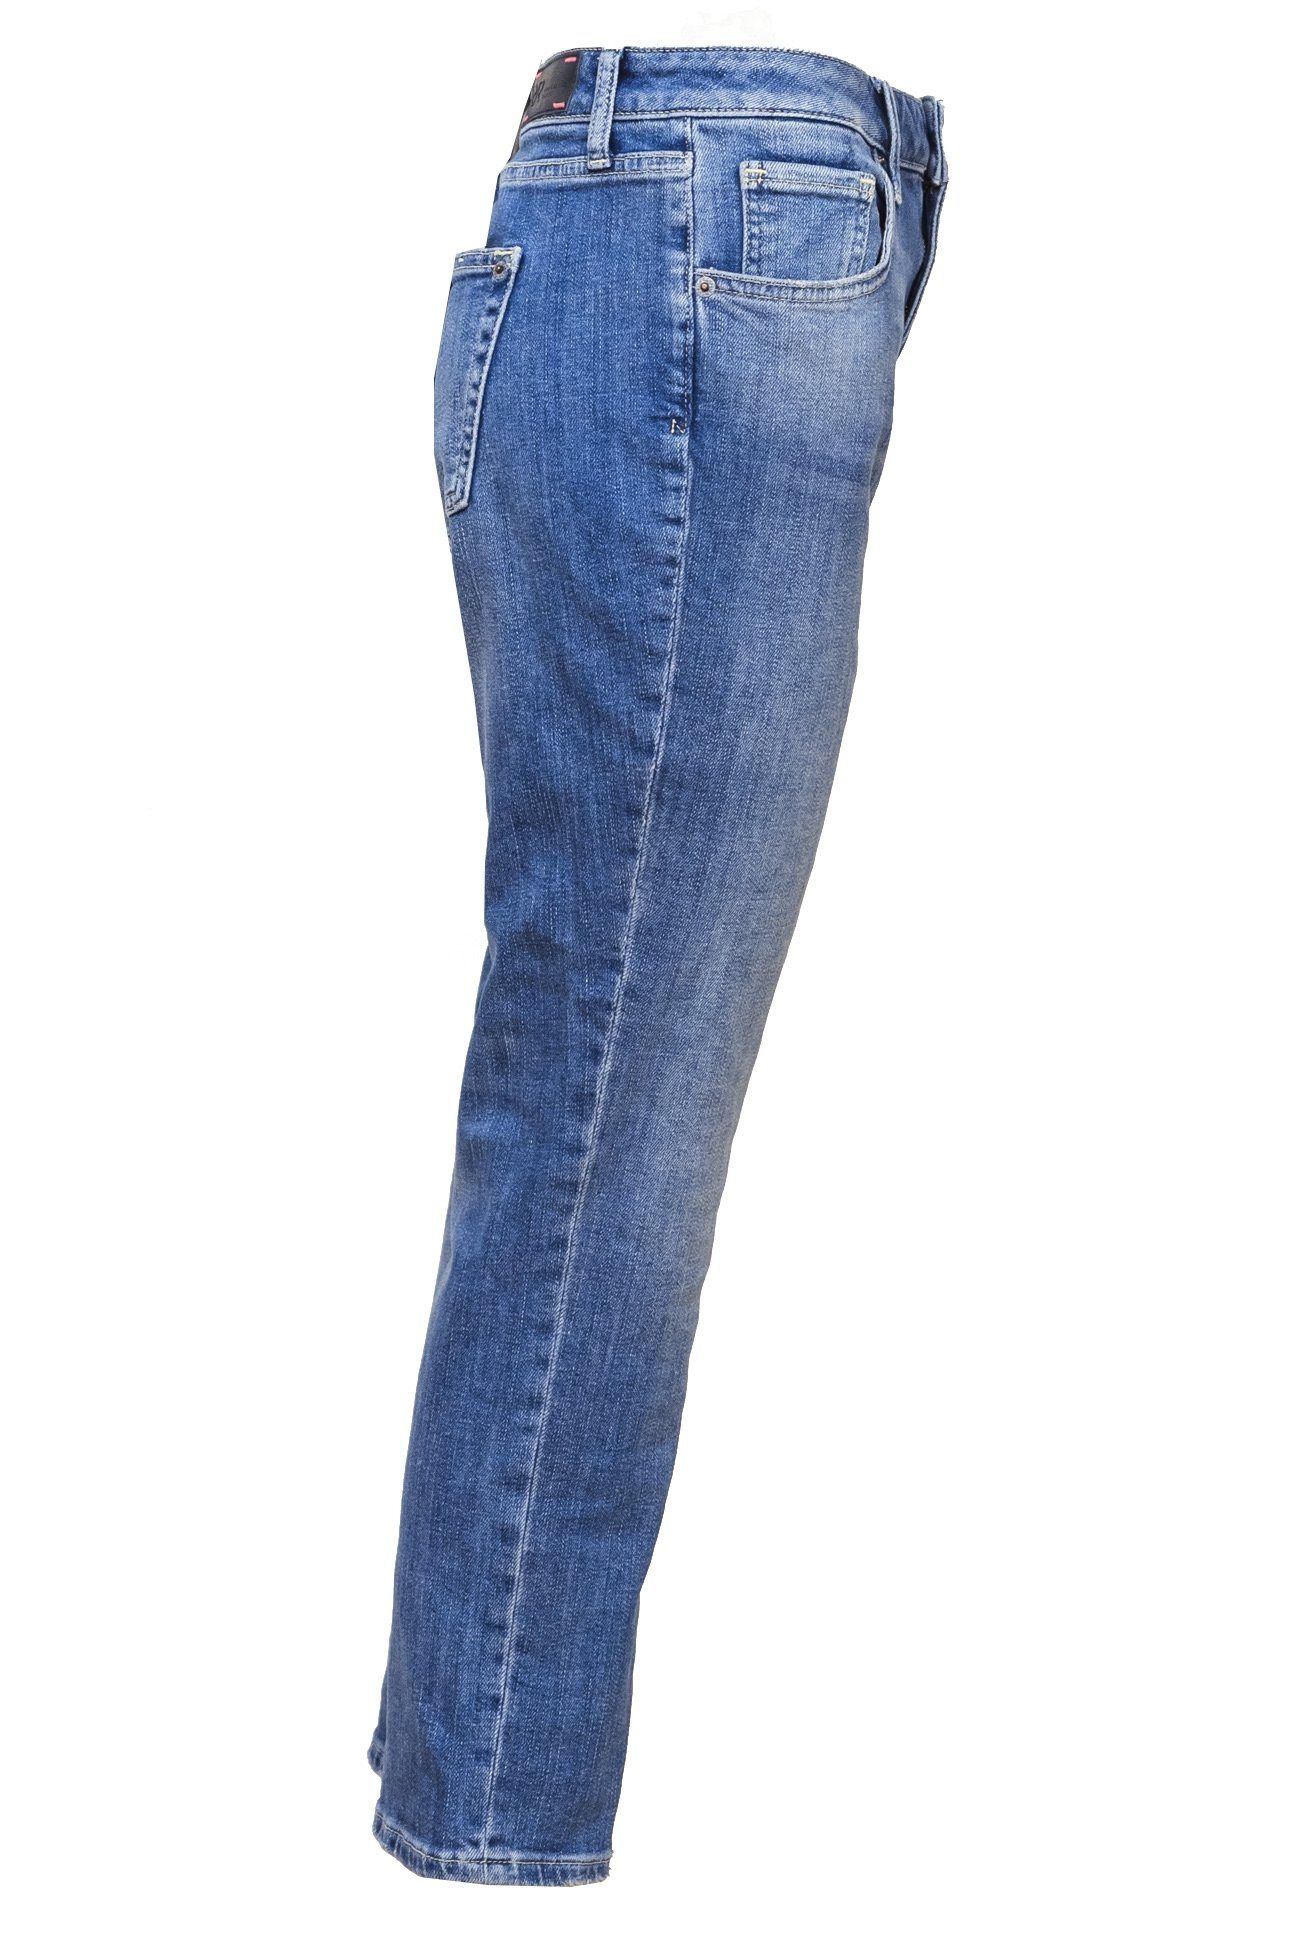 Andi Raffaello 5-Pocket-Jeans Authentic Rossi